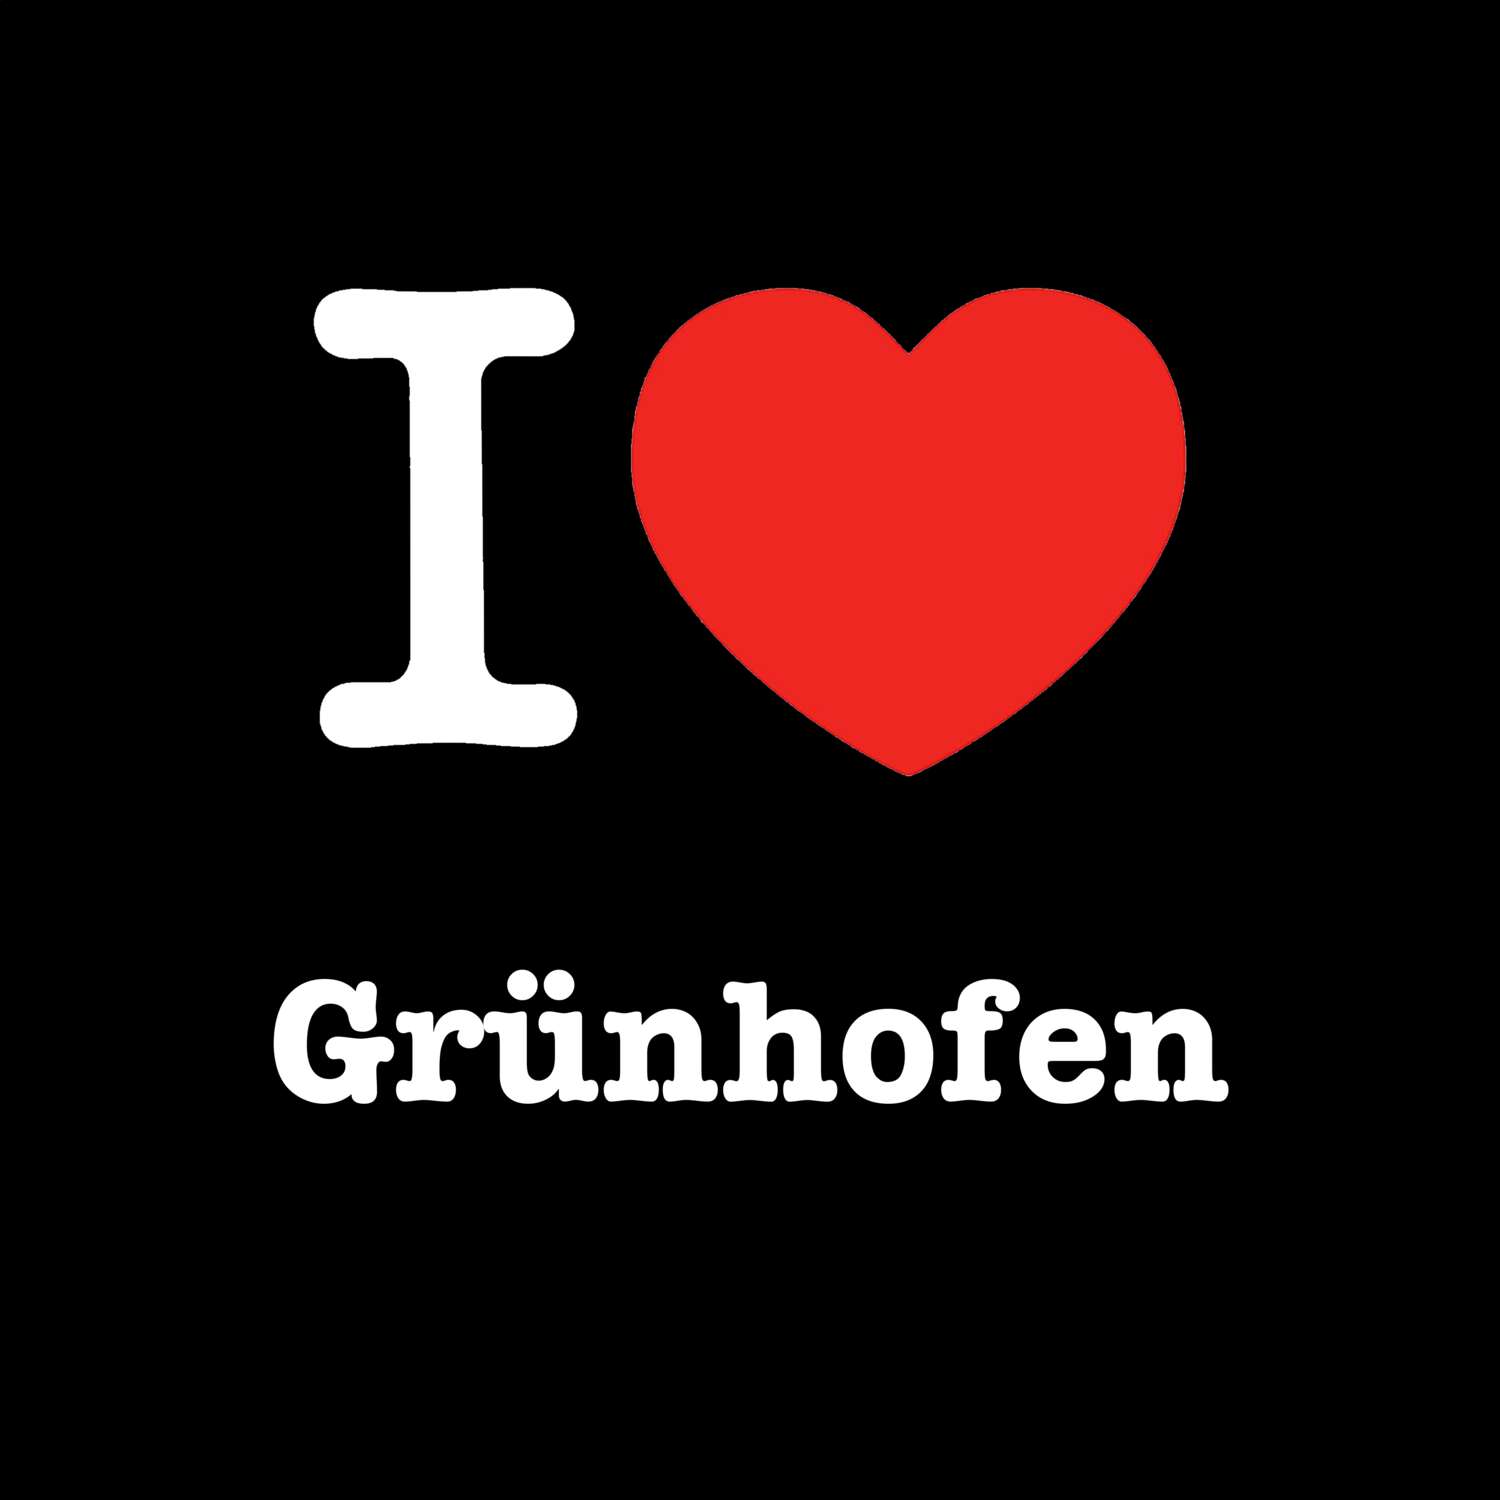 Grünhofen T-Shirt »I love«